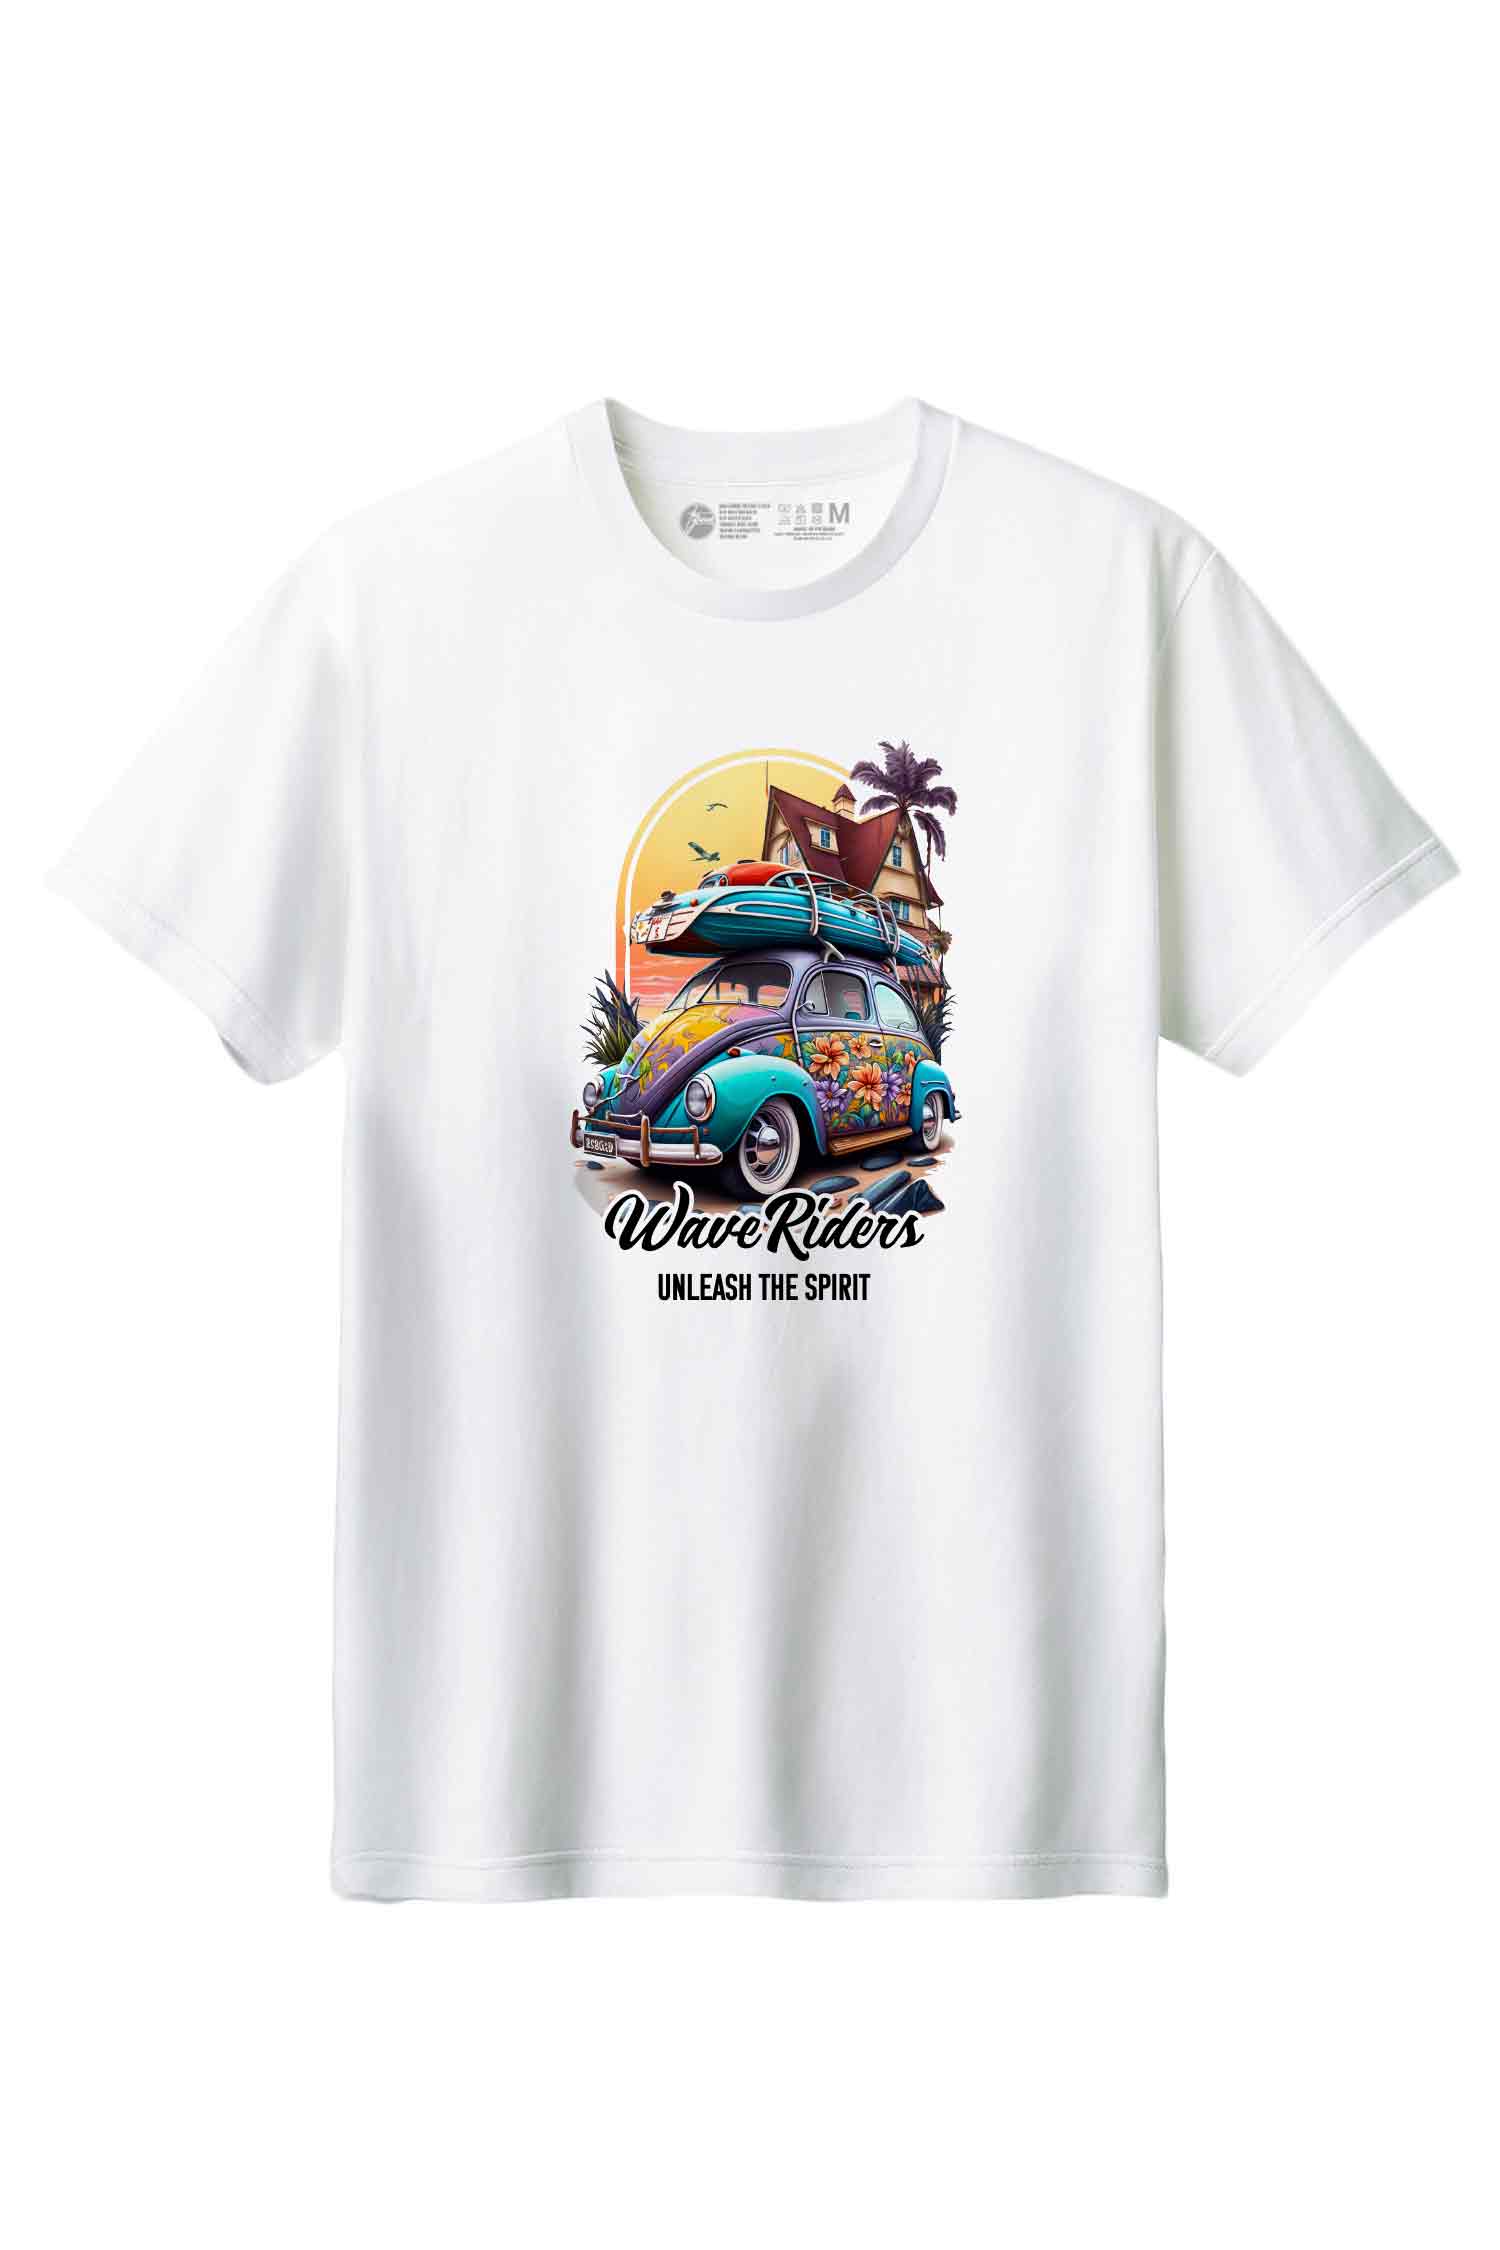 【THE GREEN】夏の風を感じる一枚！/ウェーブ・ライダーズ・レトロ・カーTシャツ -Wave Riders Retro Car  Tee/cotton 100%/size:XS-XXL